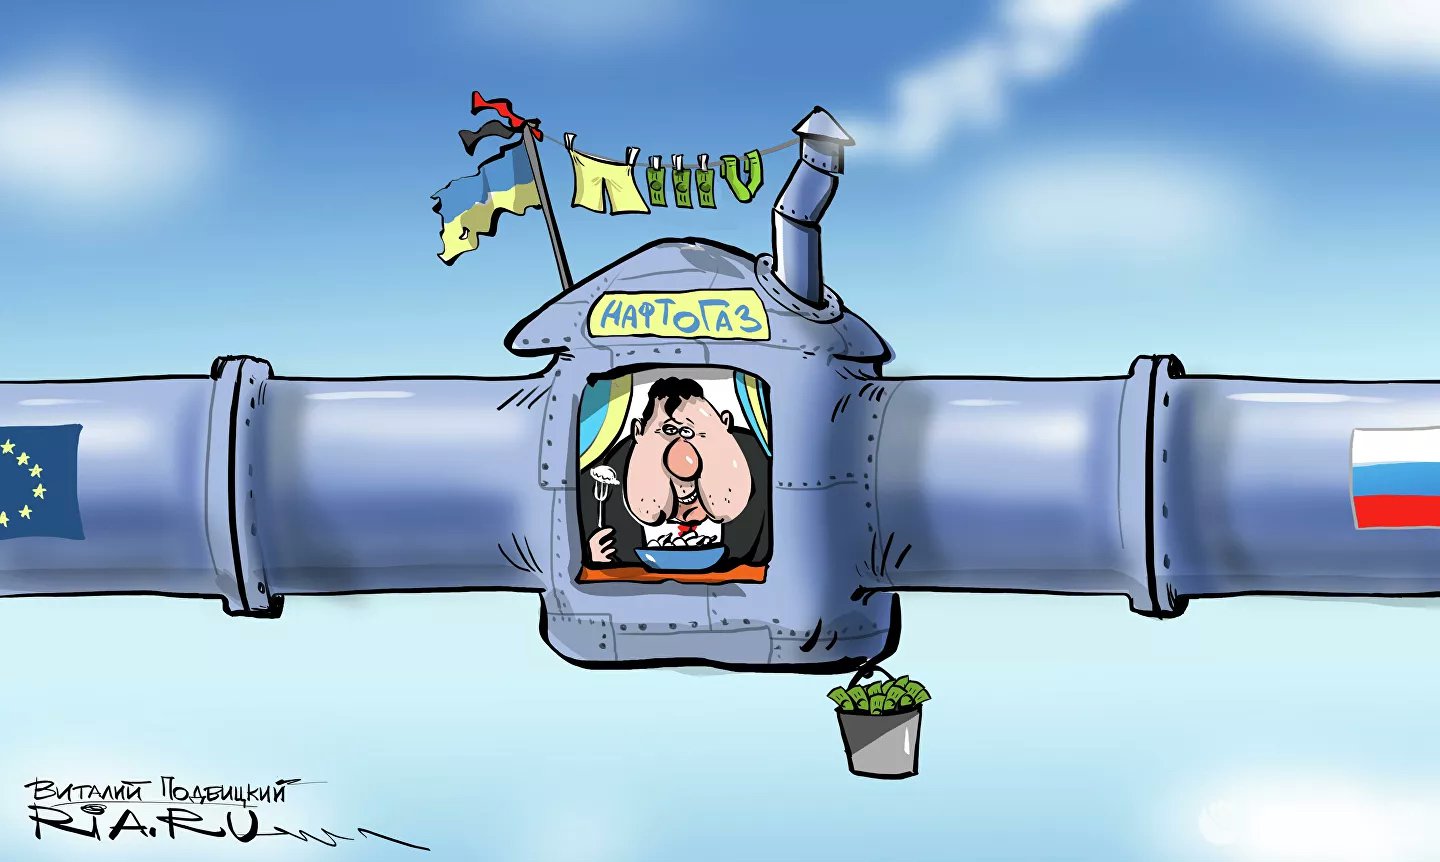 Карикатура "Кручу-верчу, запутать хочу", Виталий Подвицкий